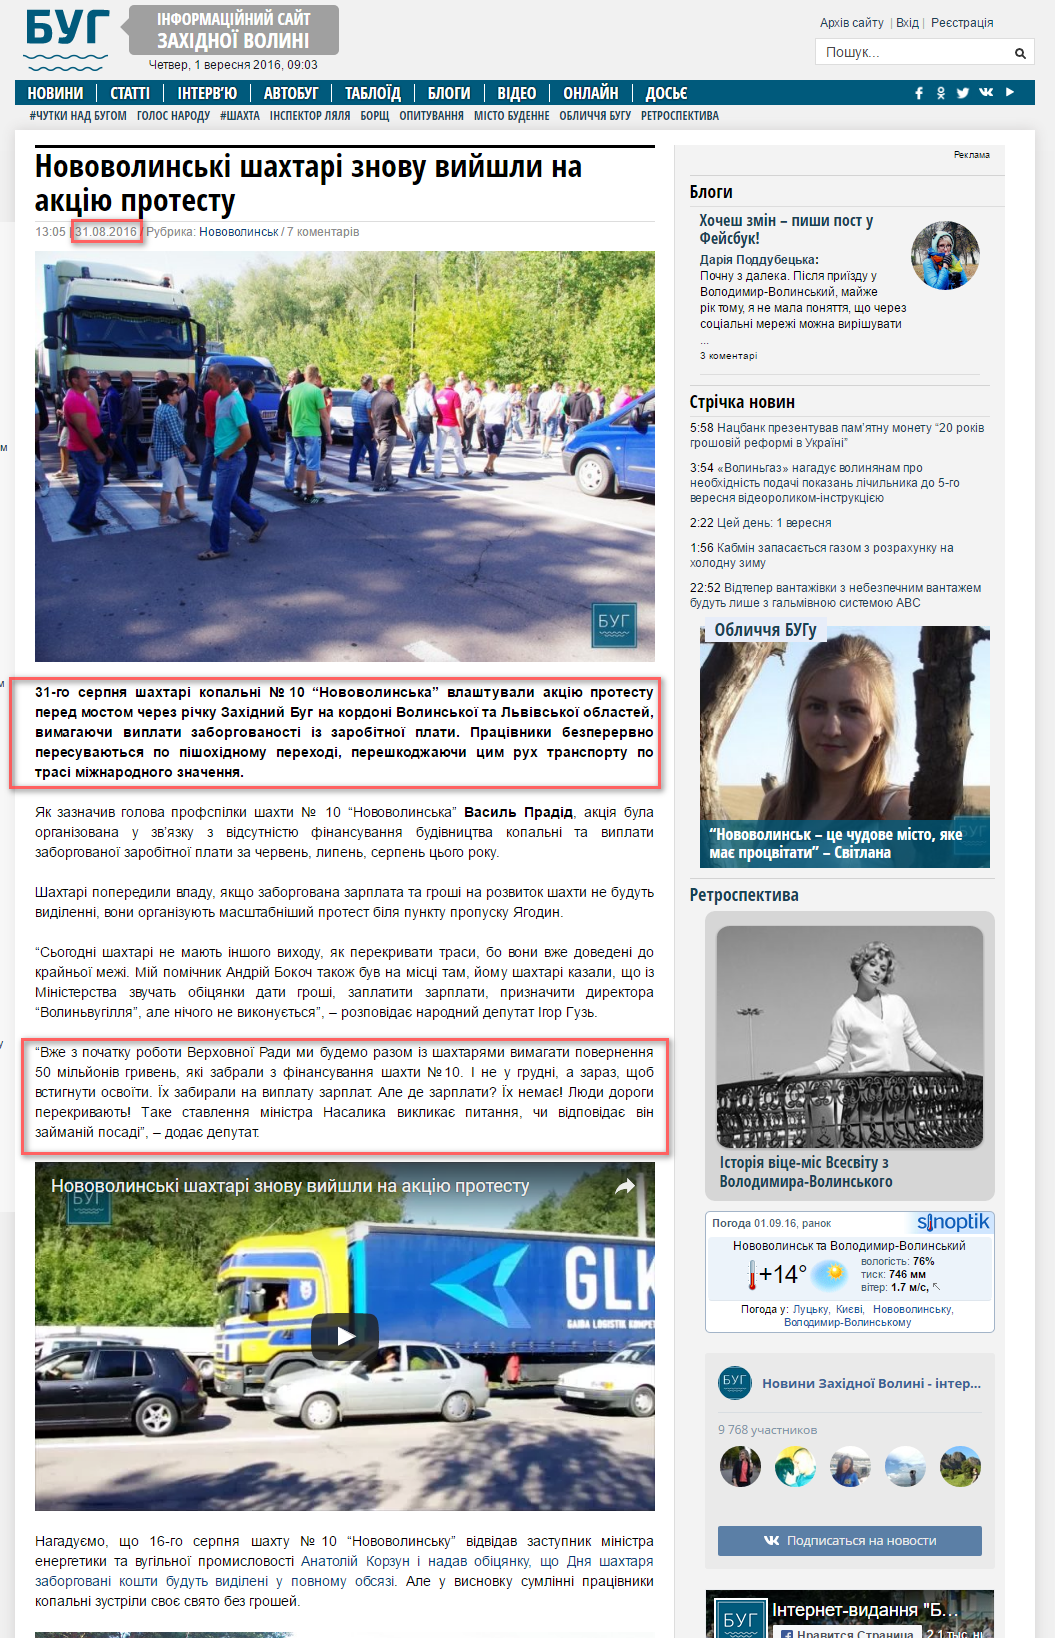 http://bug.org.ua/news/novovolynsk/novovolynski-shahtari-znovu-vyjshly-na-aktsiyu-protestu-118804/